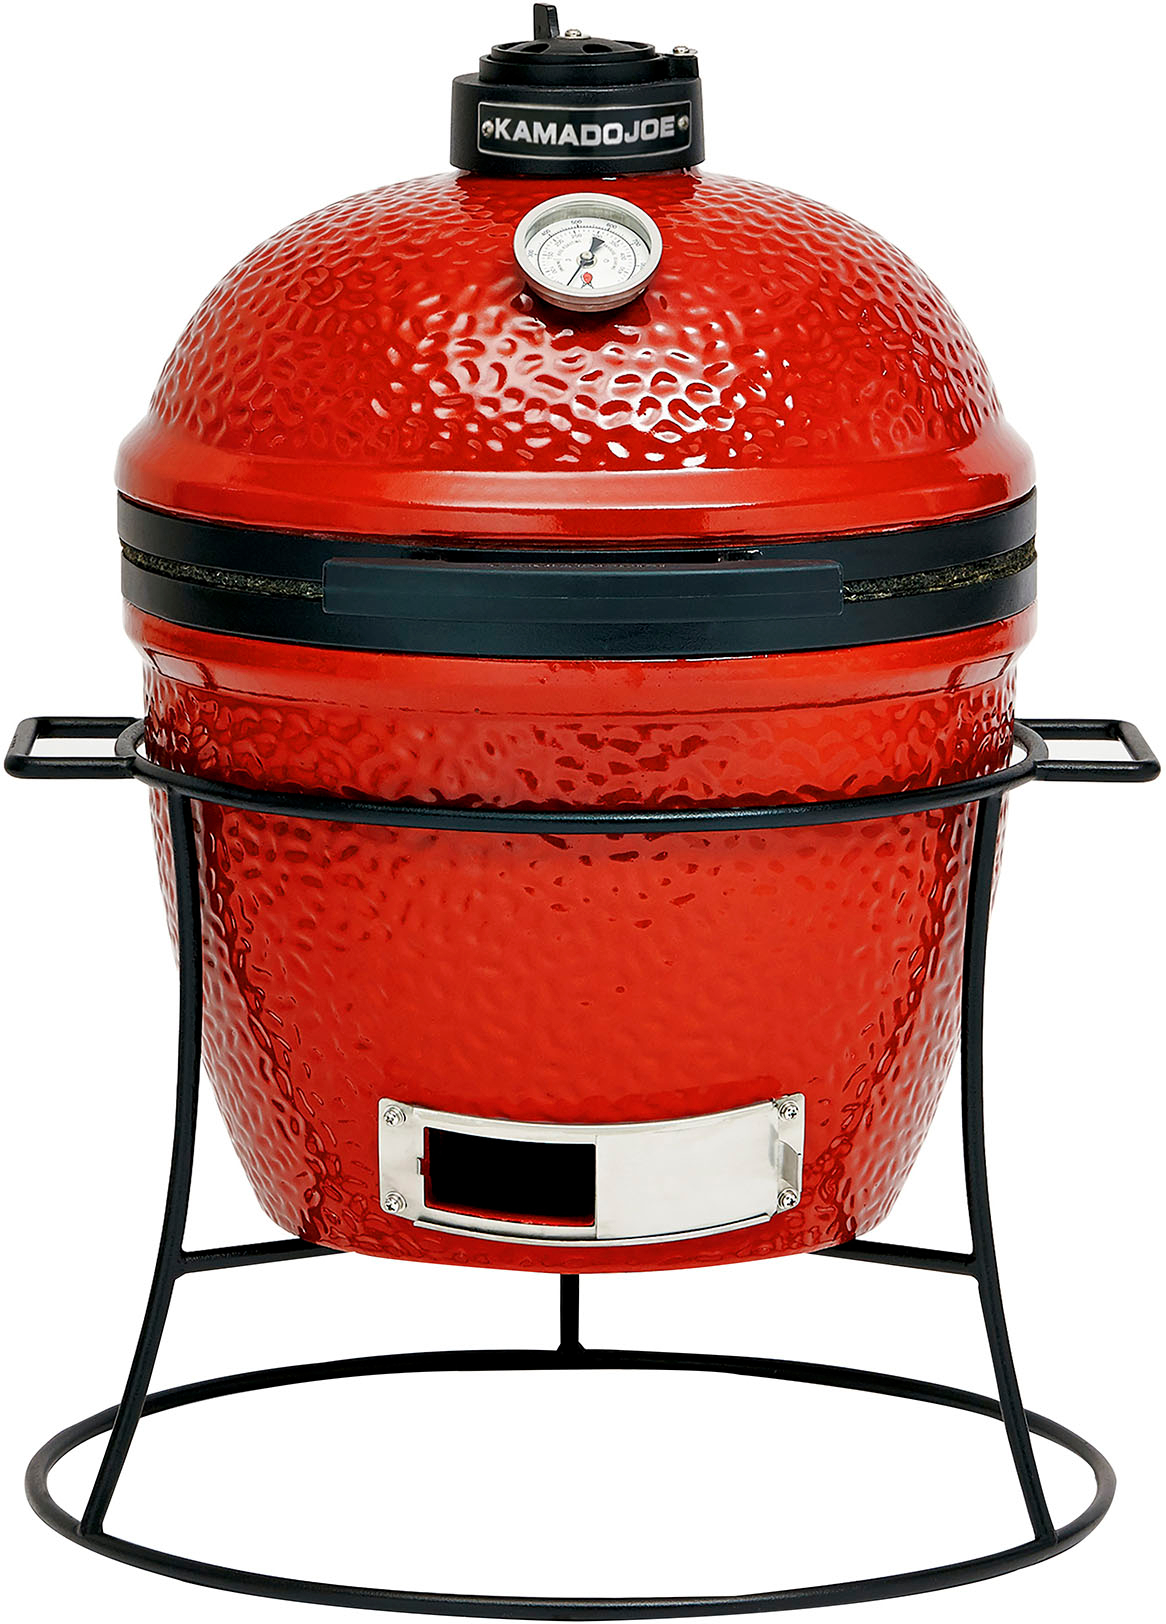 KAMADO JOE - JOE JR. Charcoal Grill with stand - Blaze Red